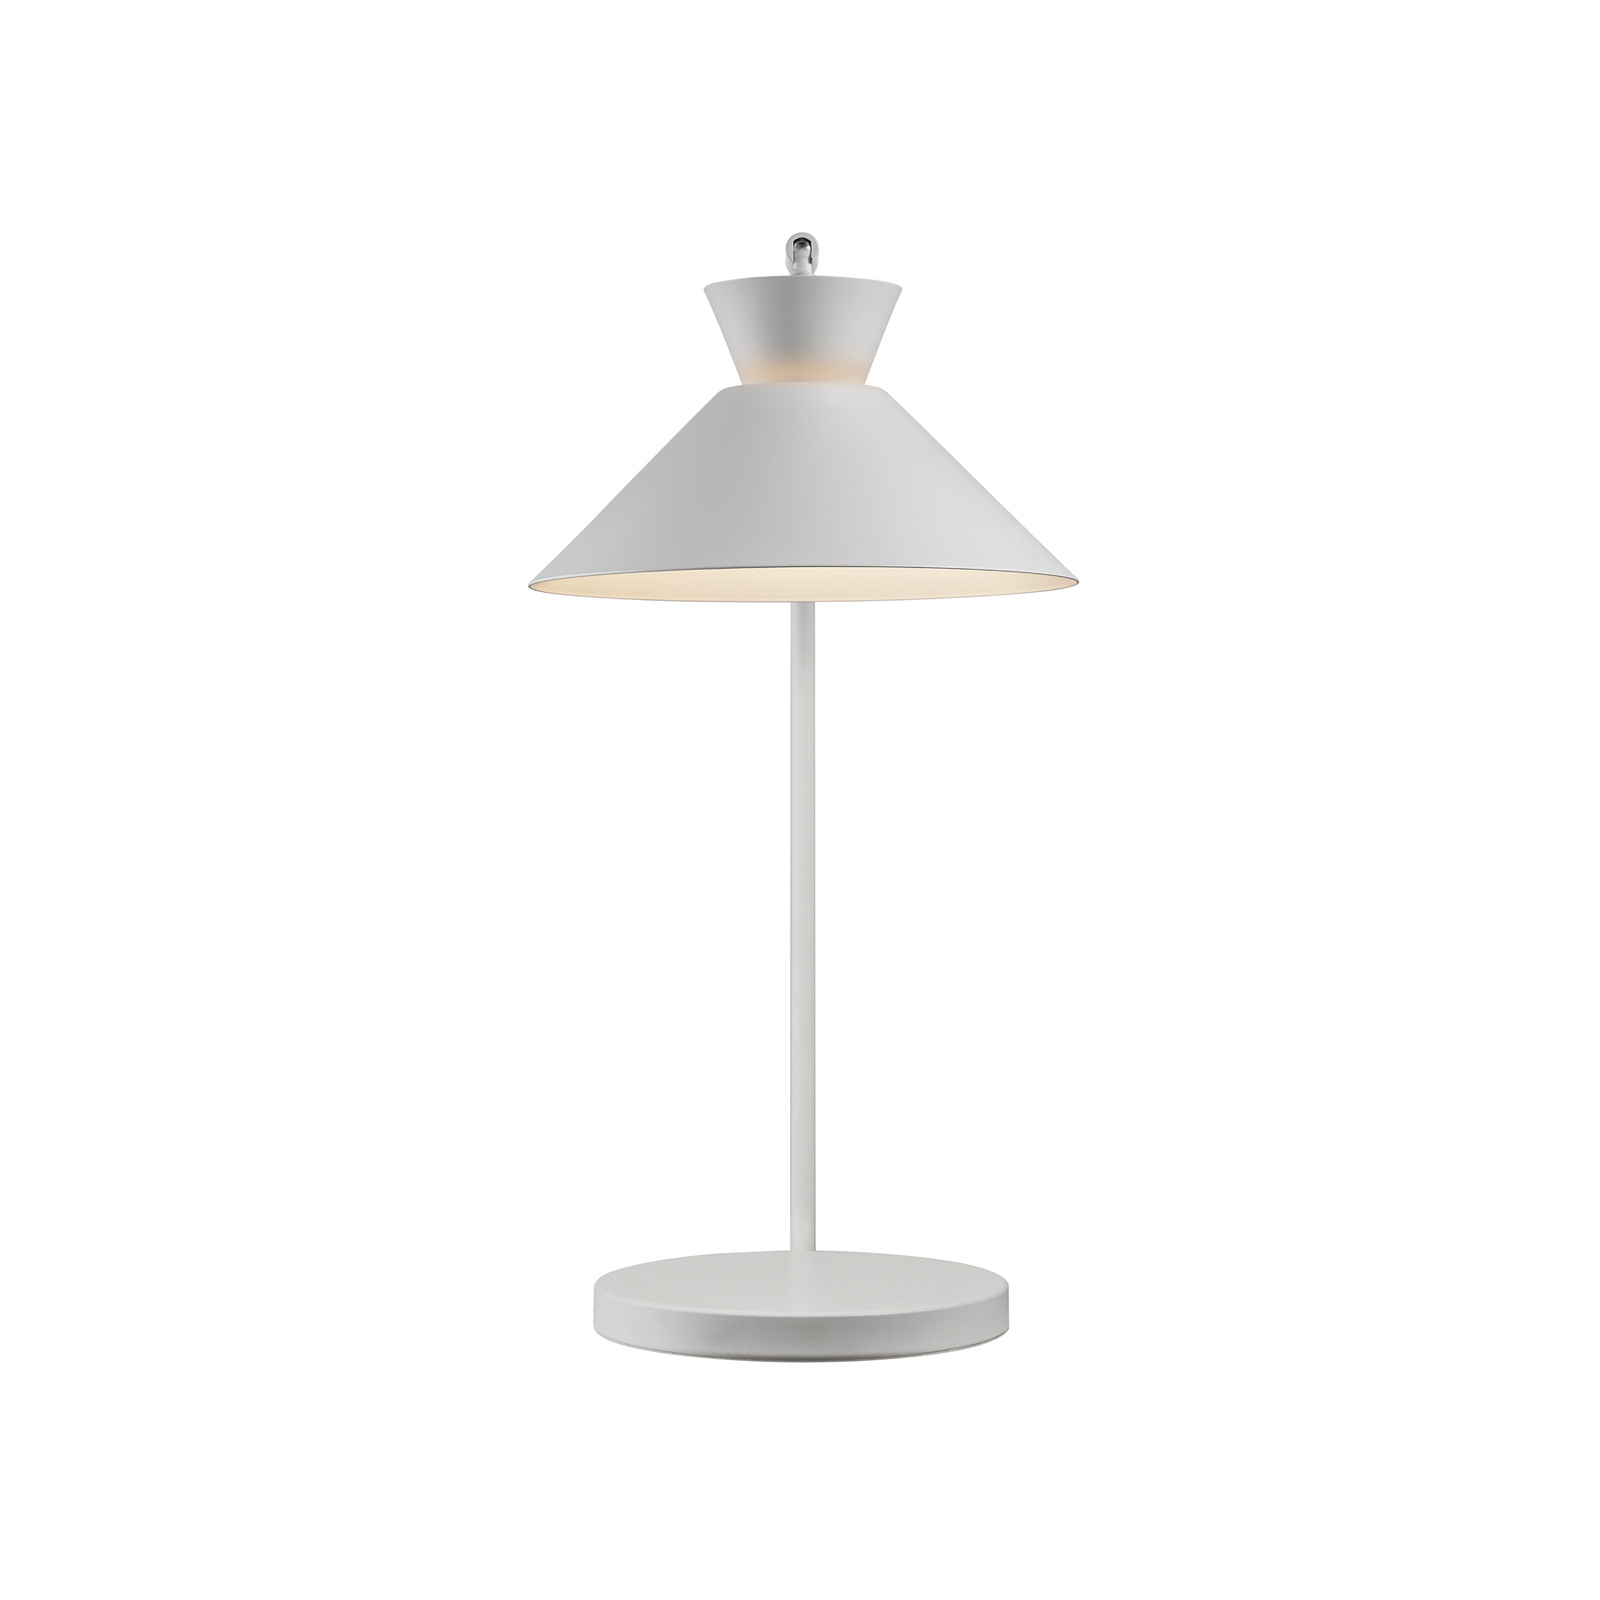 Tafellamp Dial van metaal, wit